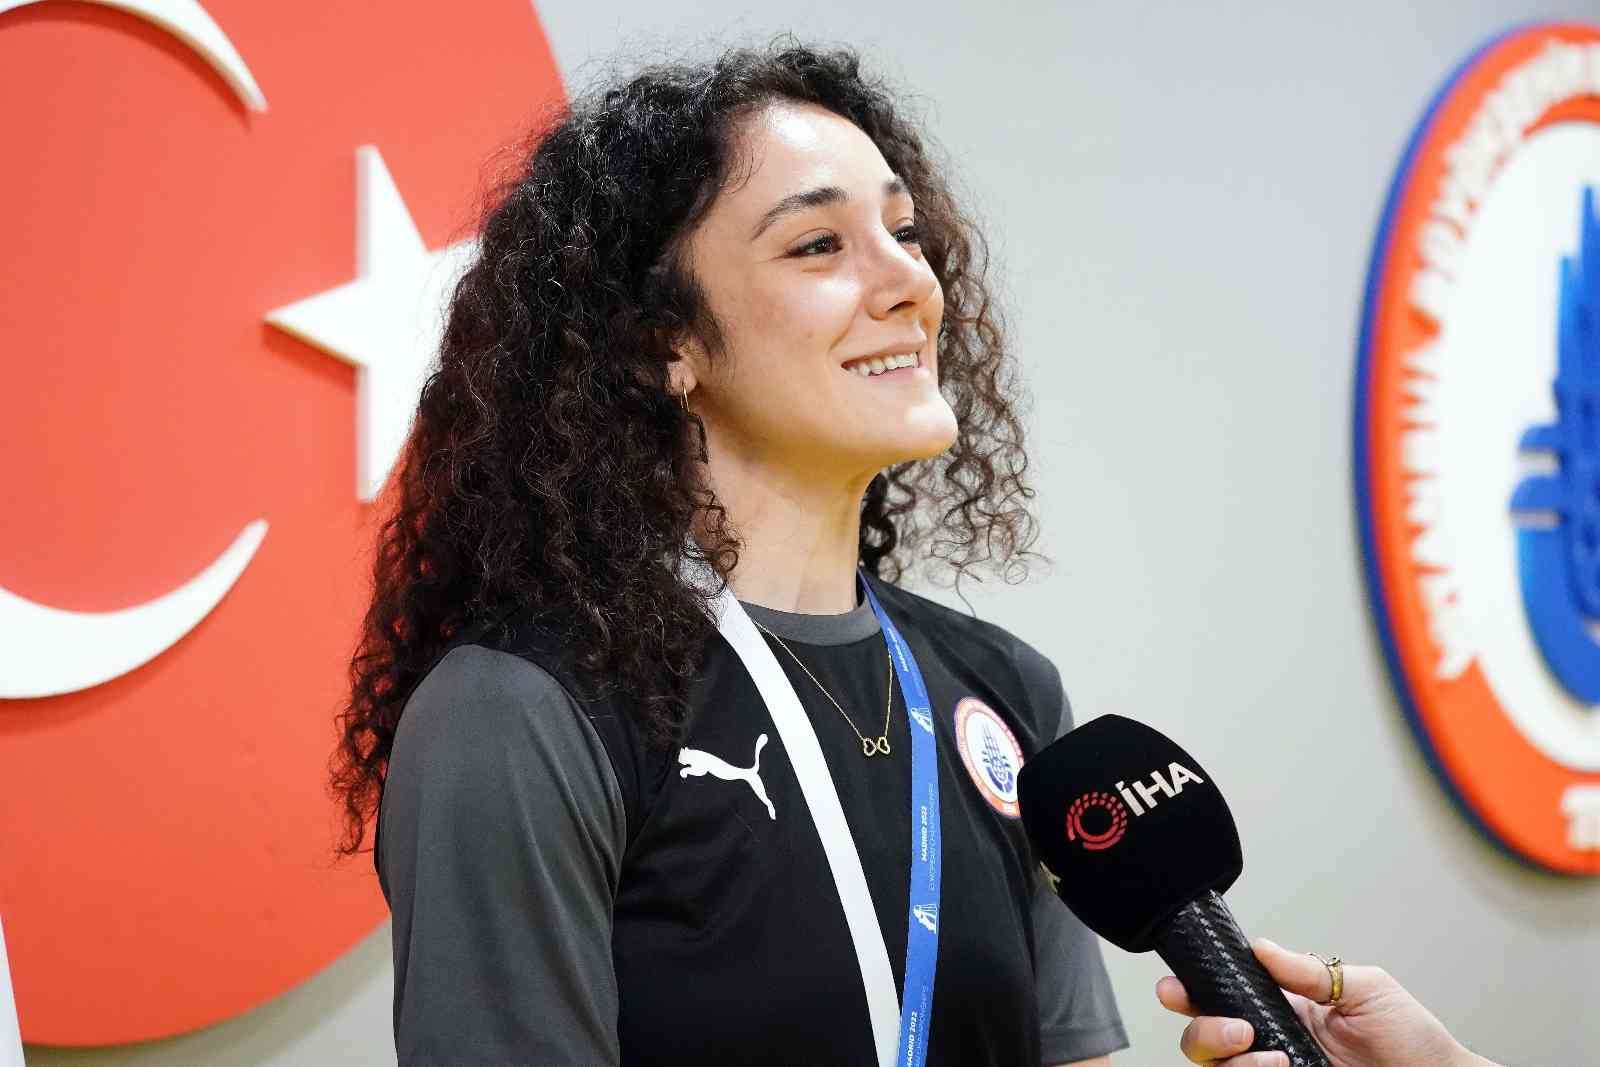 İspanya’da düzenlenen Avrupa Badminton Şampiyonası’ndan bronz madalya ile dönen Neslihan Yiğit, “Dünya sıralamasında ilk 10 içerisinde, en iyiler ...